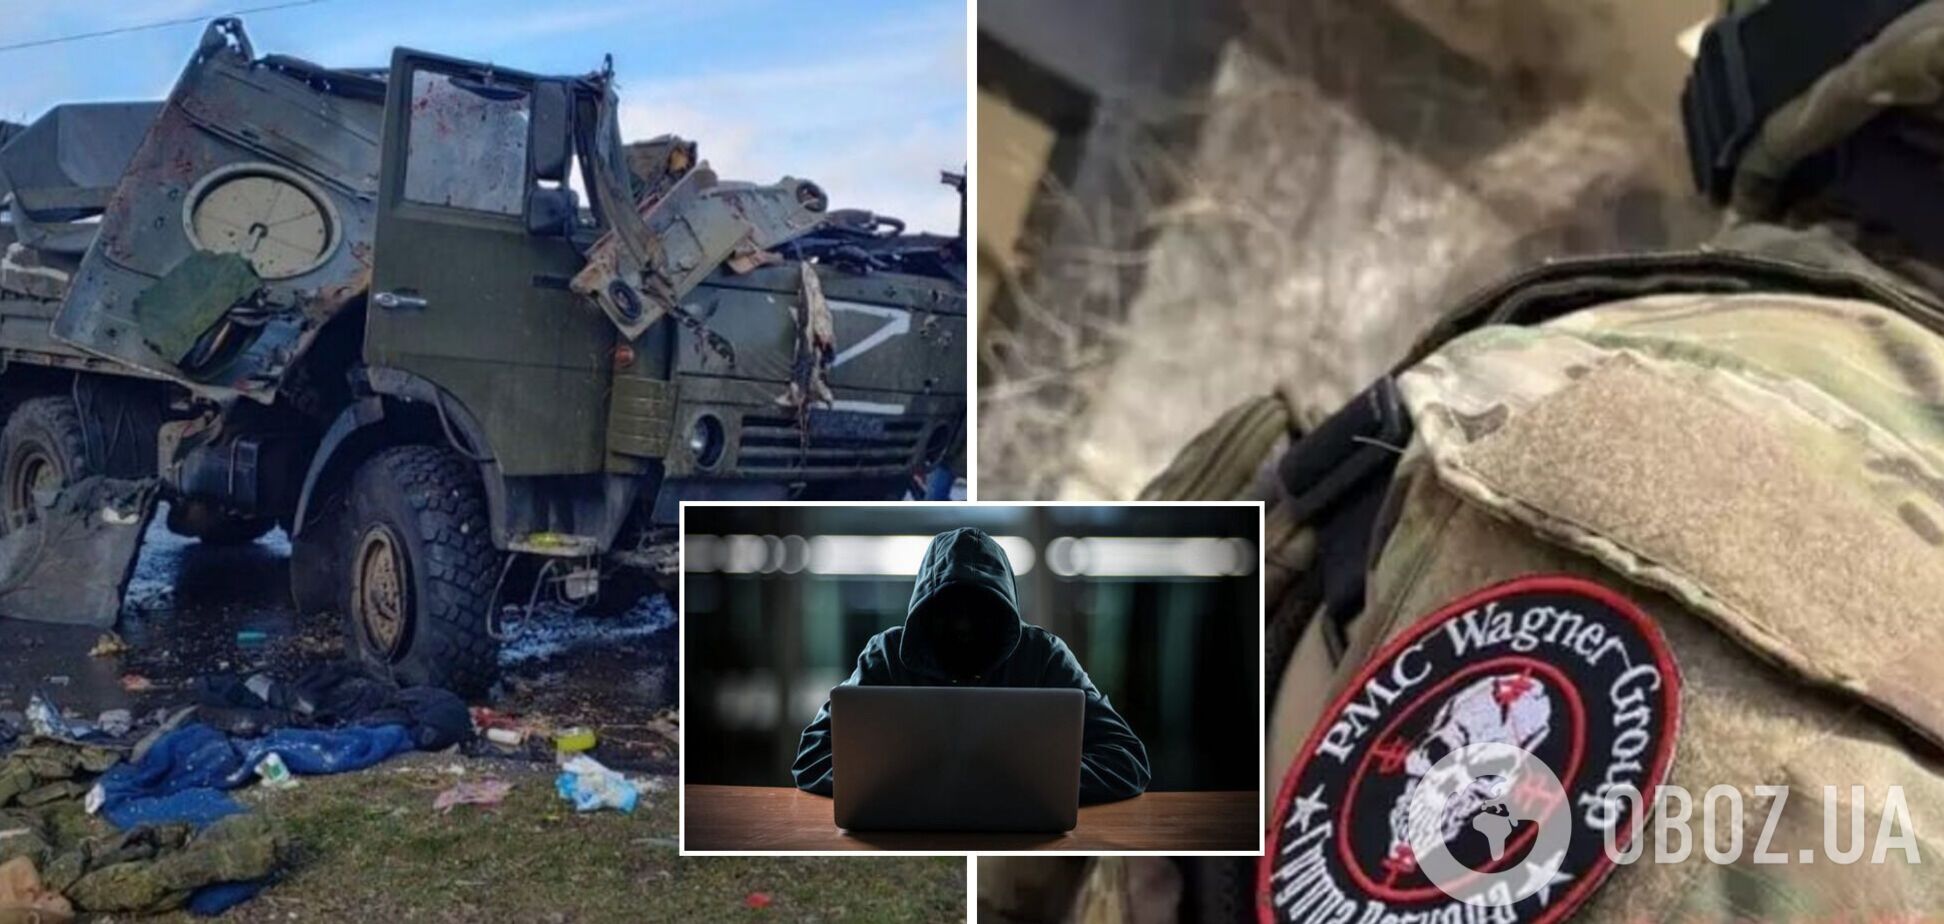 Українська IT-армія зламала сайт ПВК 'Вагнера' і залишила найманцям послання